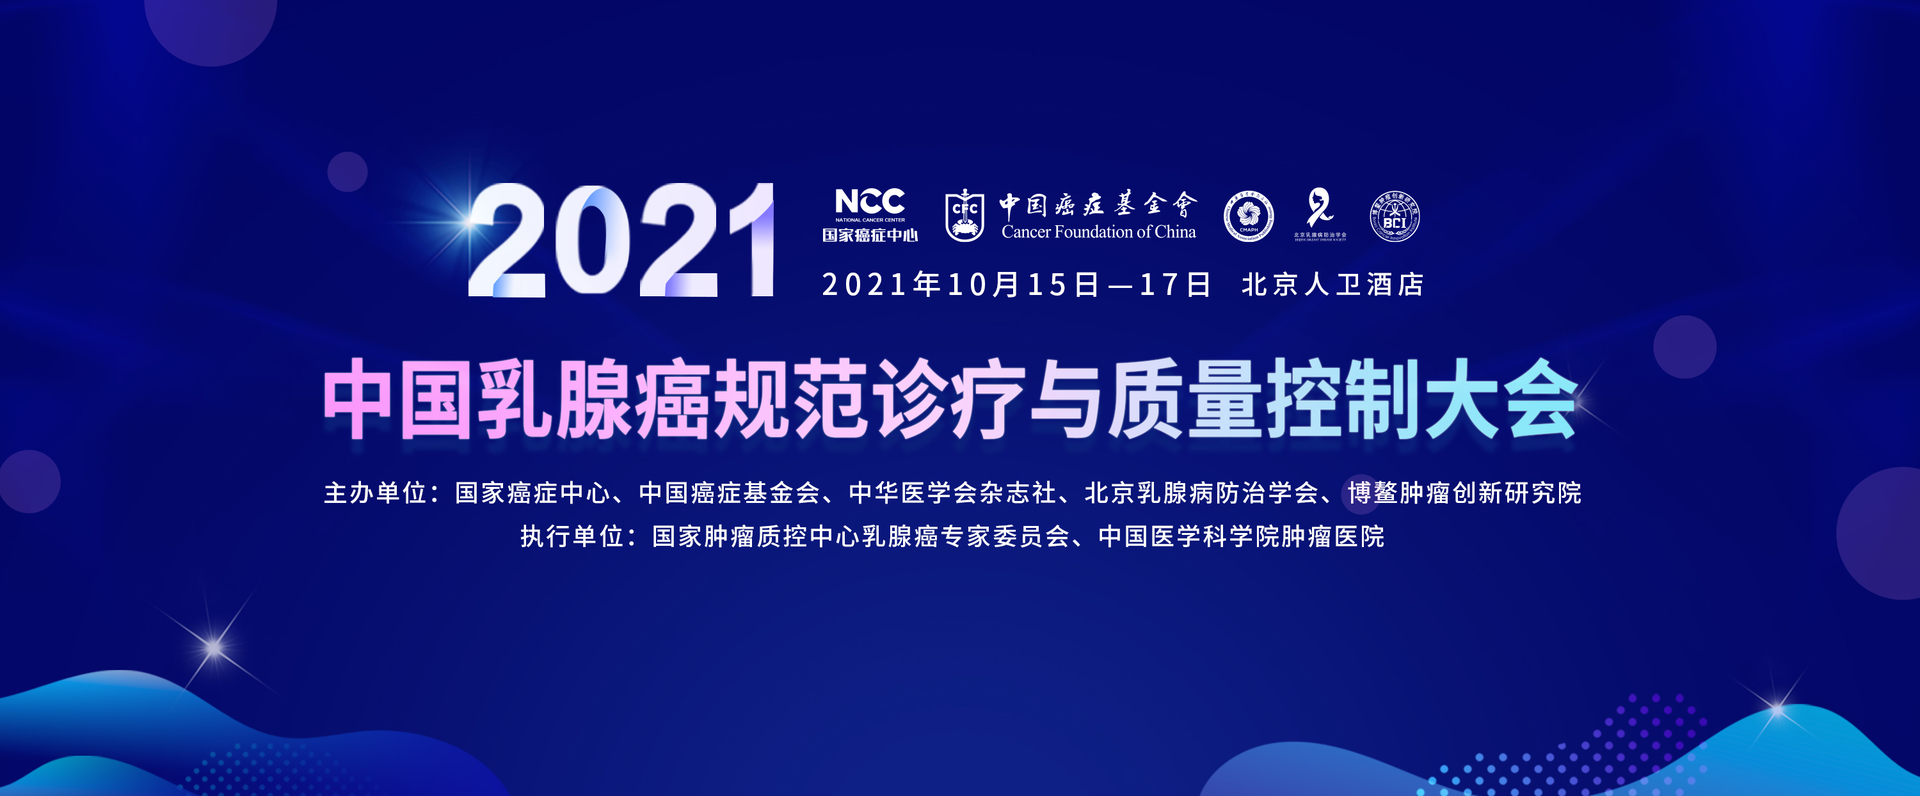 2021年中国乳腺癌规范诊疗与质量控制大会